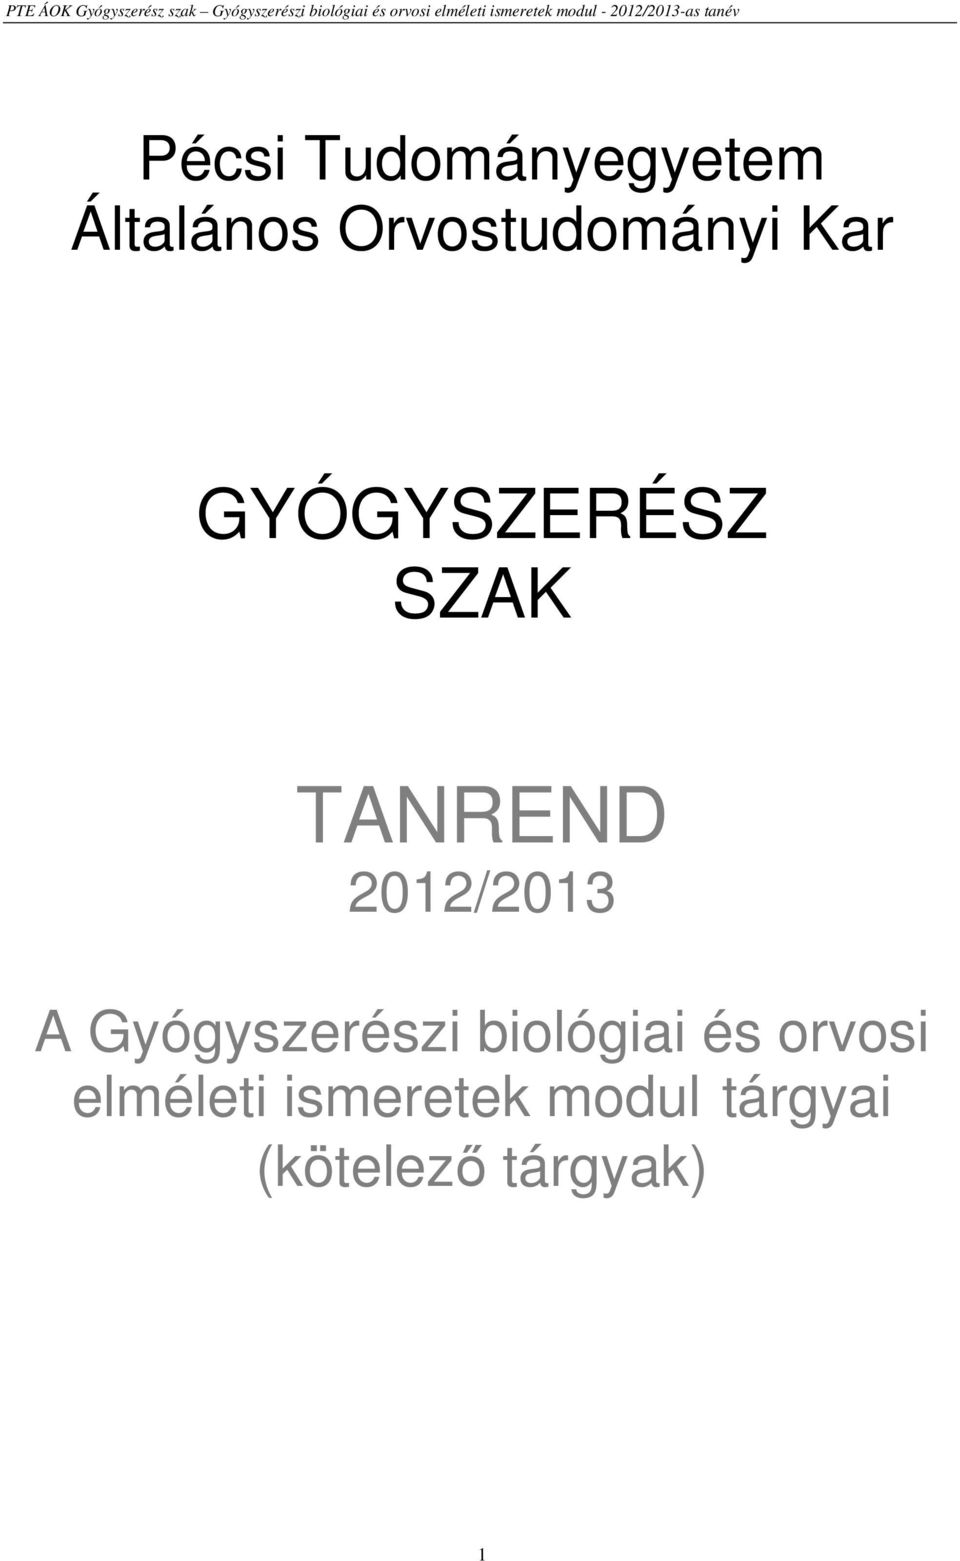 TANREND 2012/2013 A Gyógyszerészi biológiai